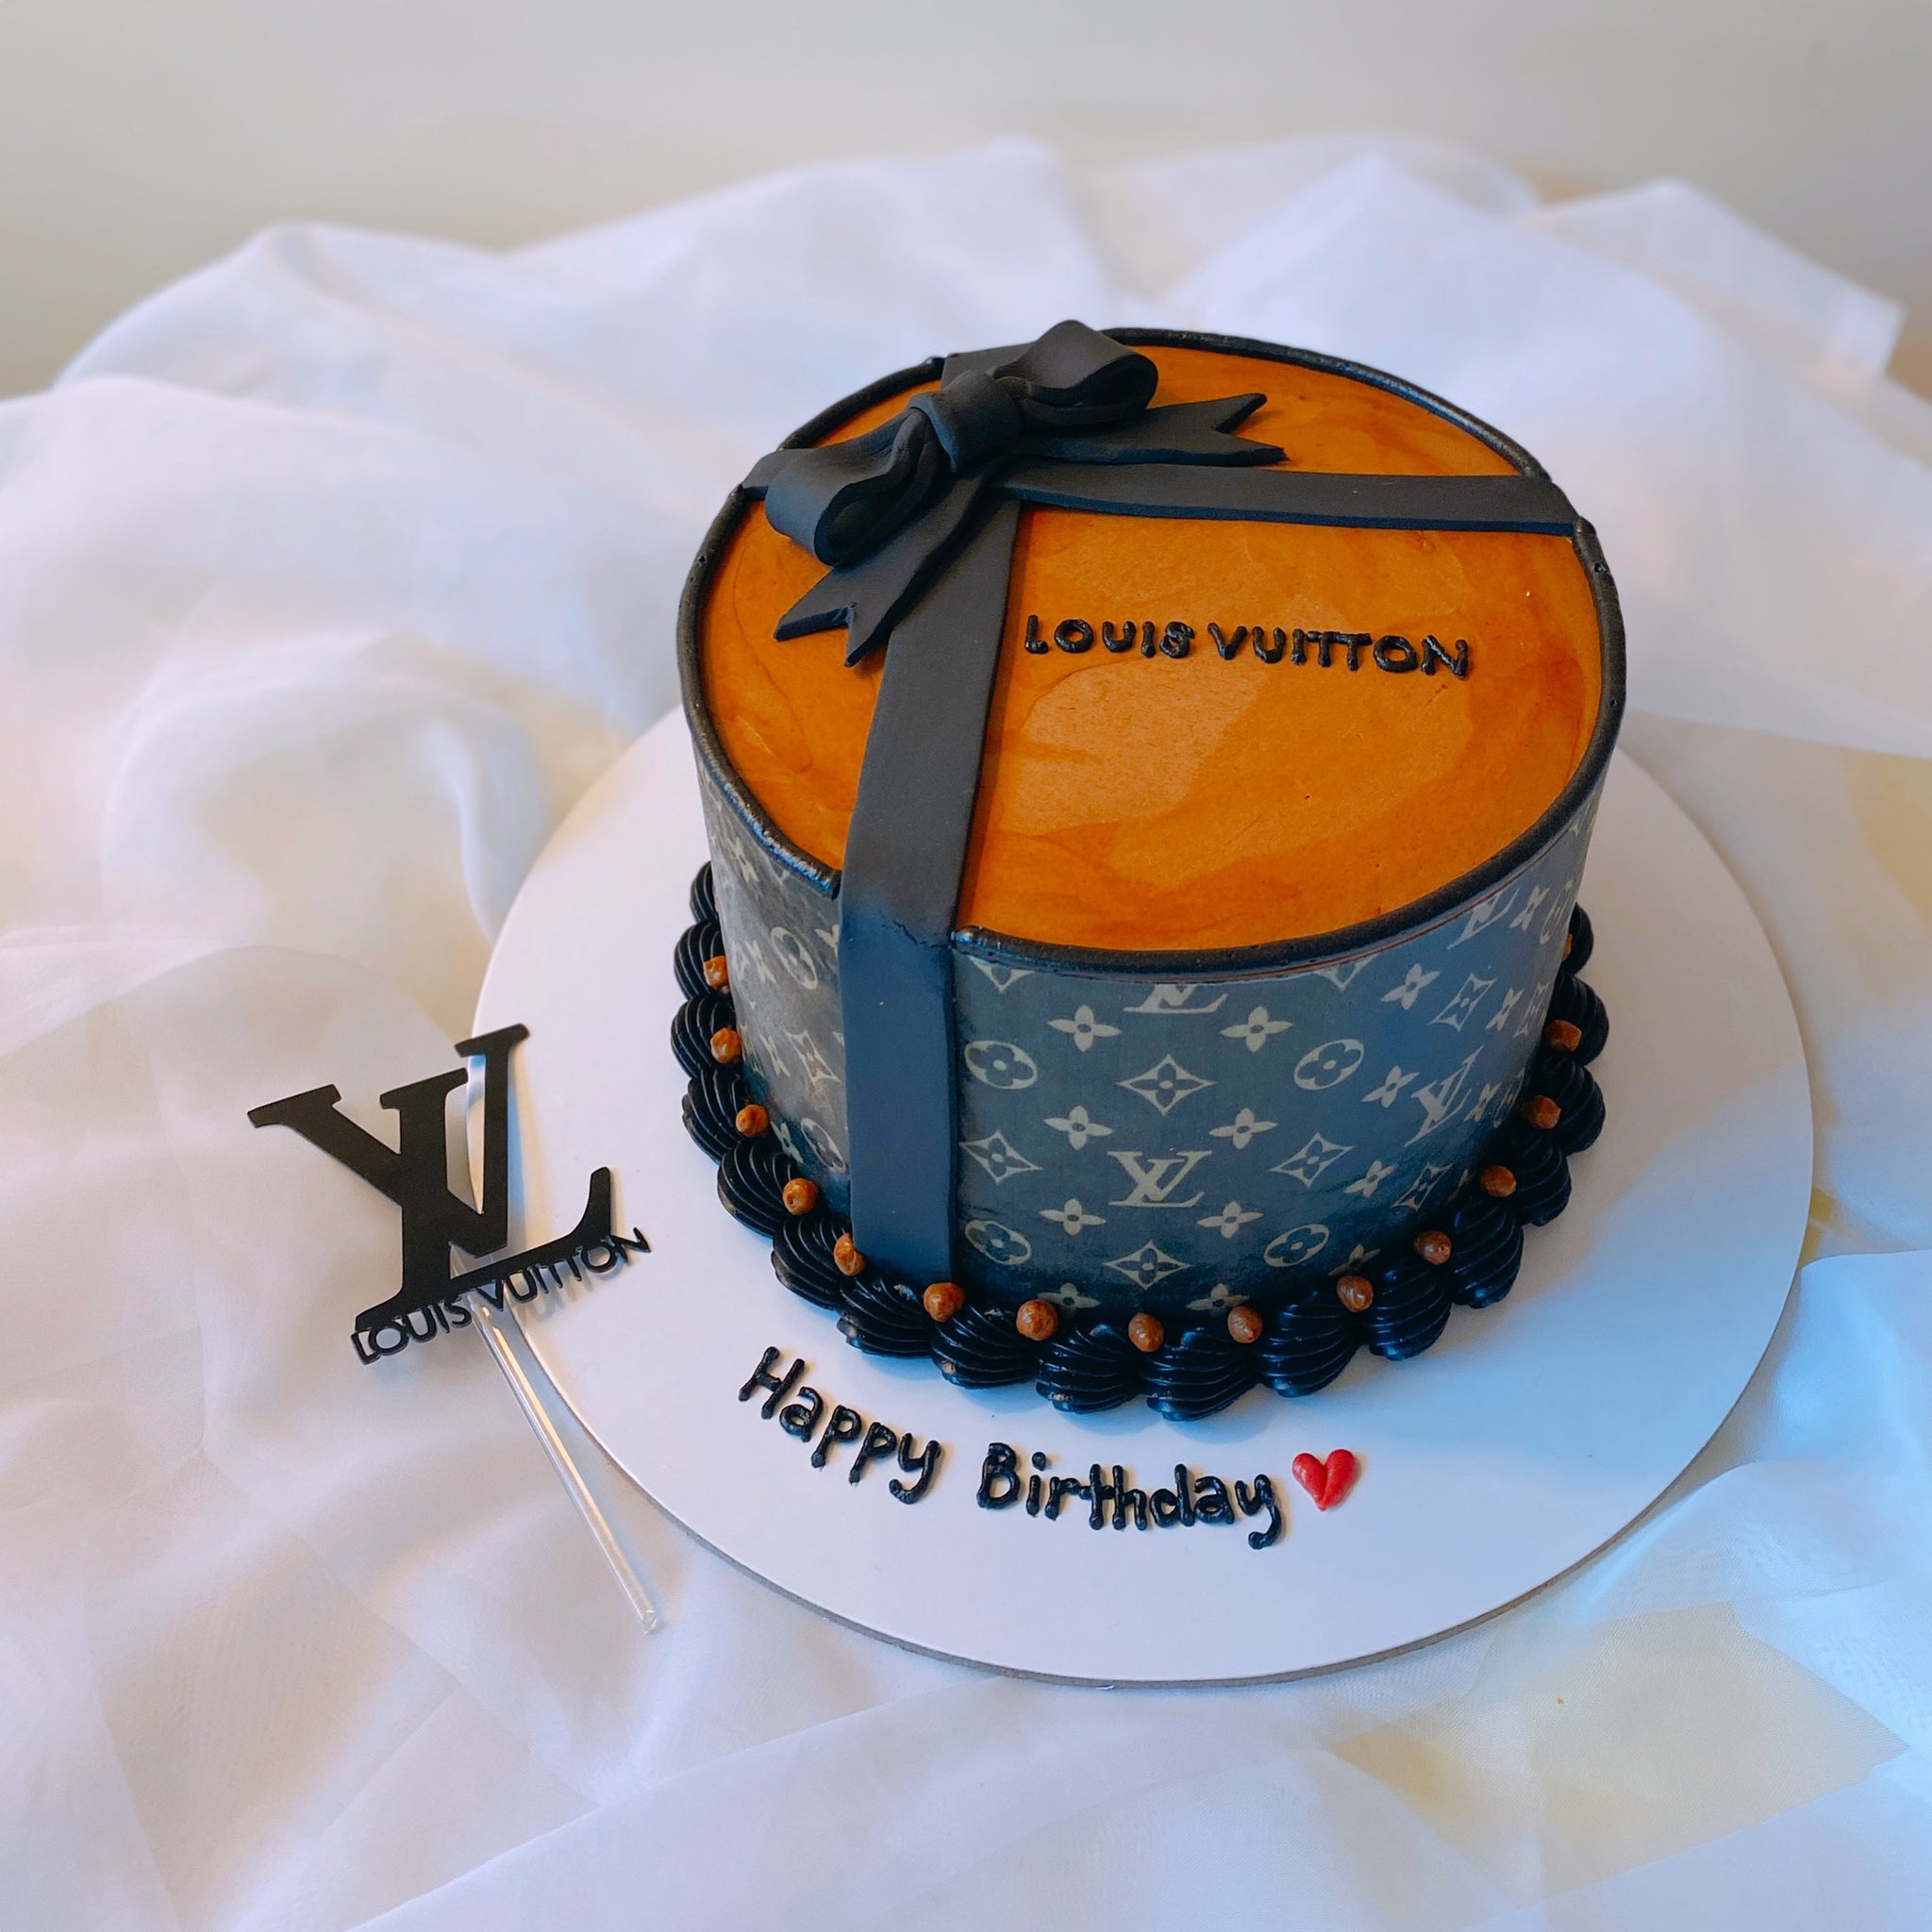 Lv - Amarantos Cakes